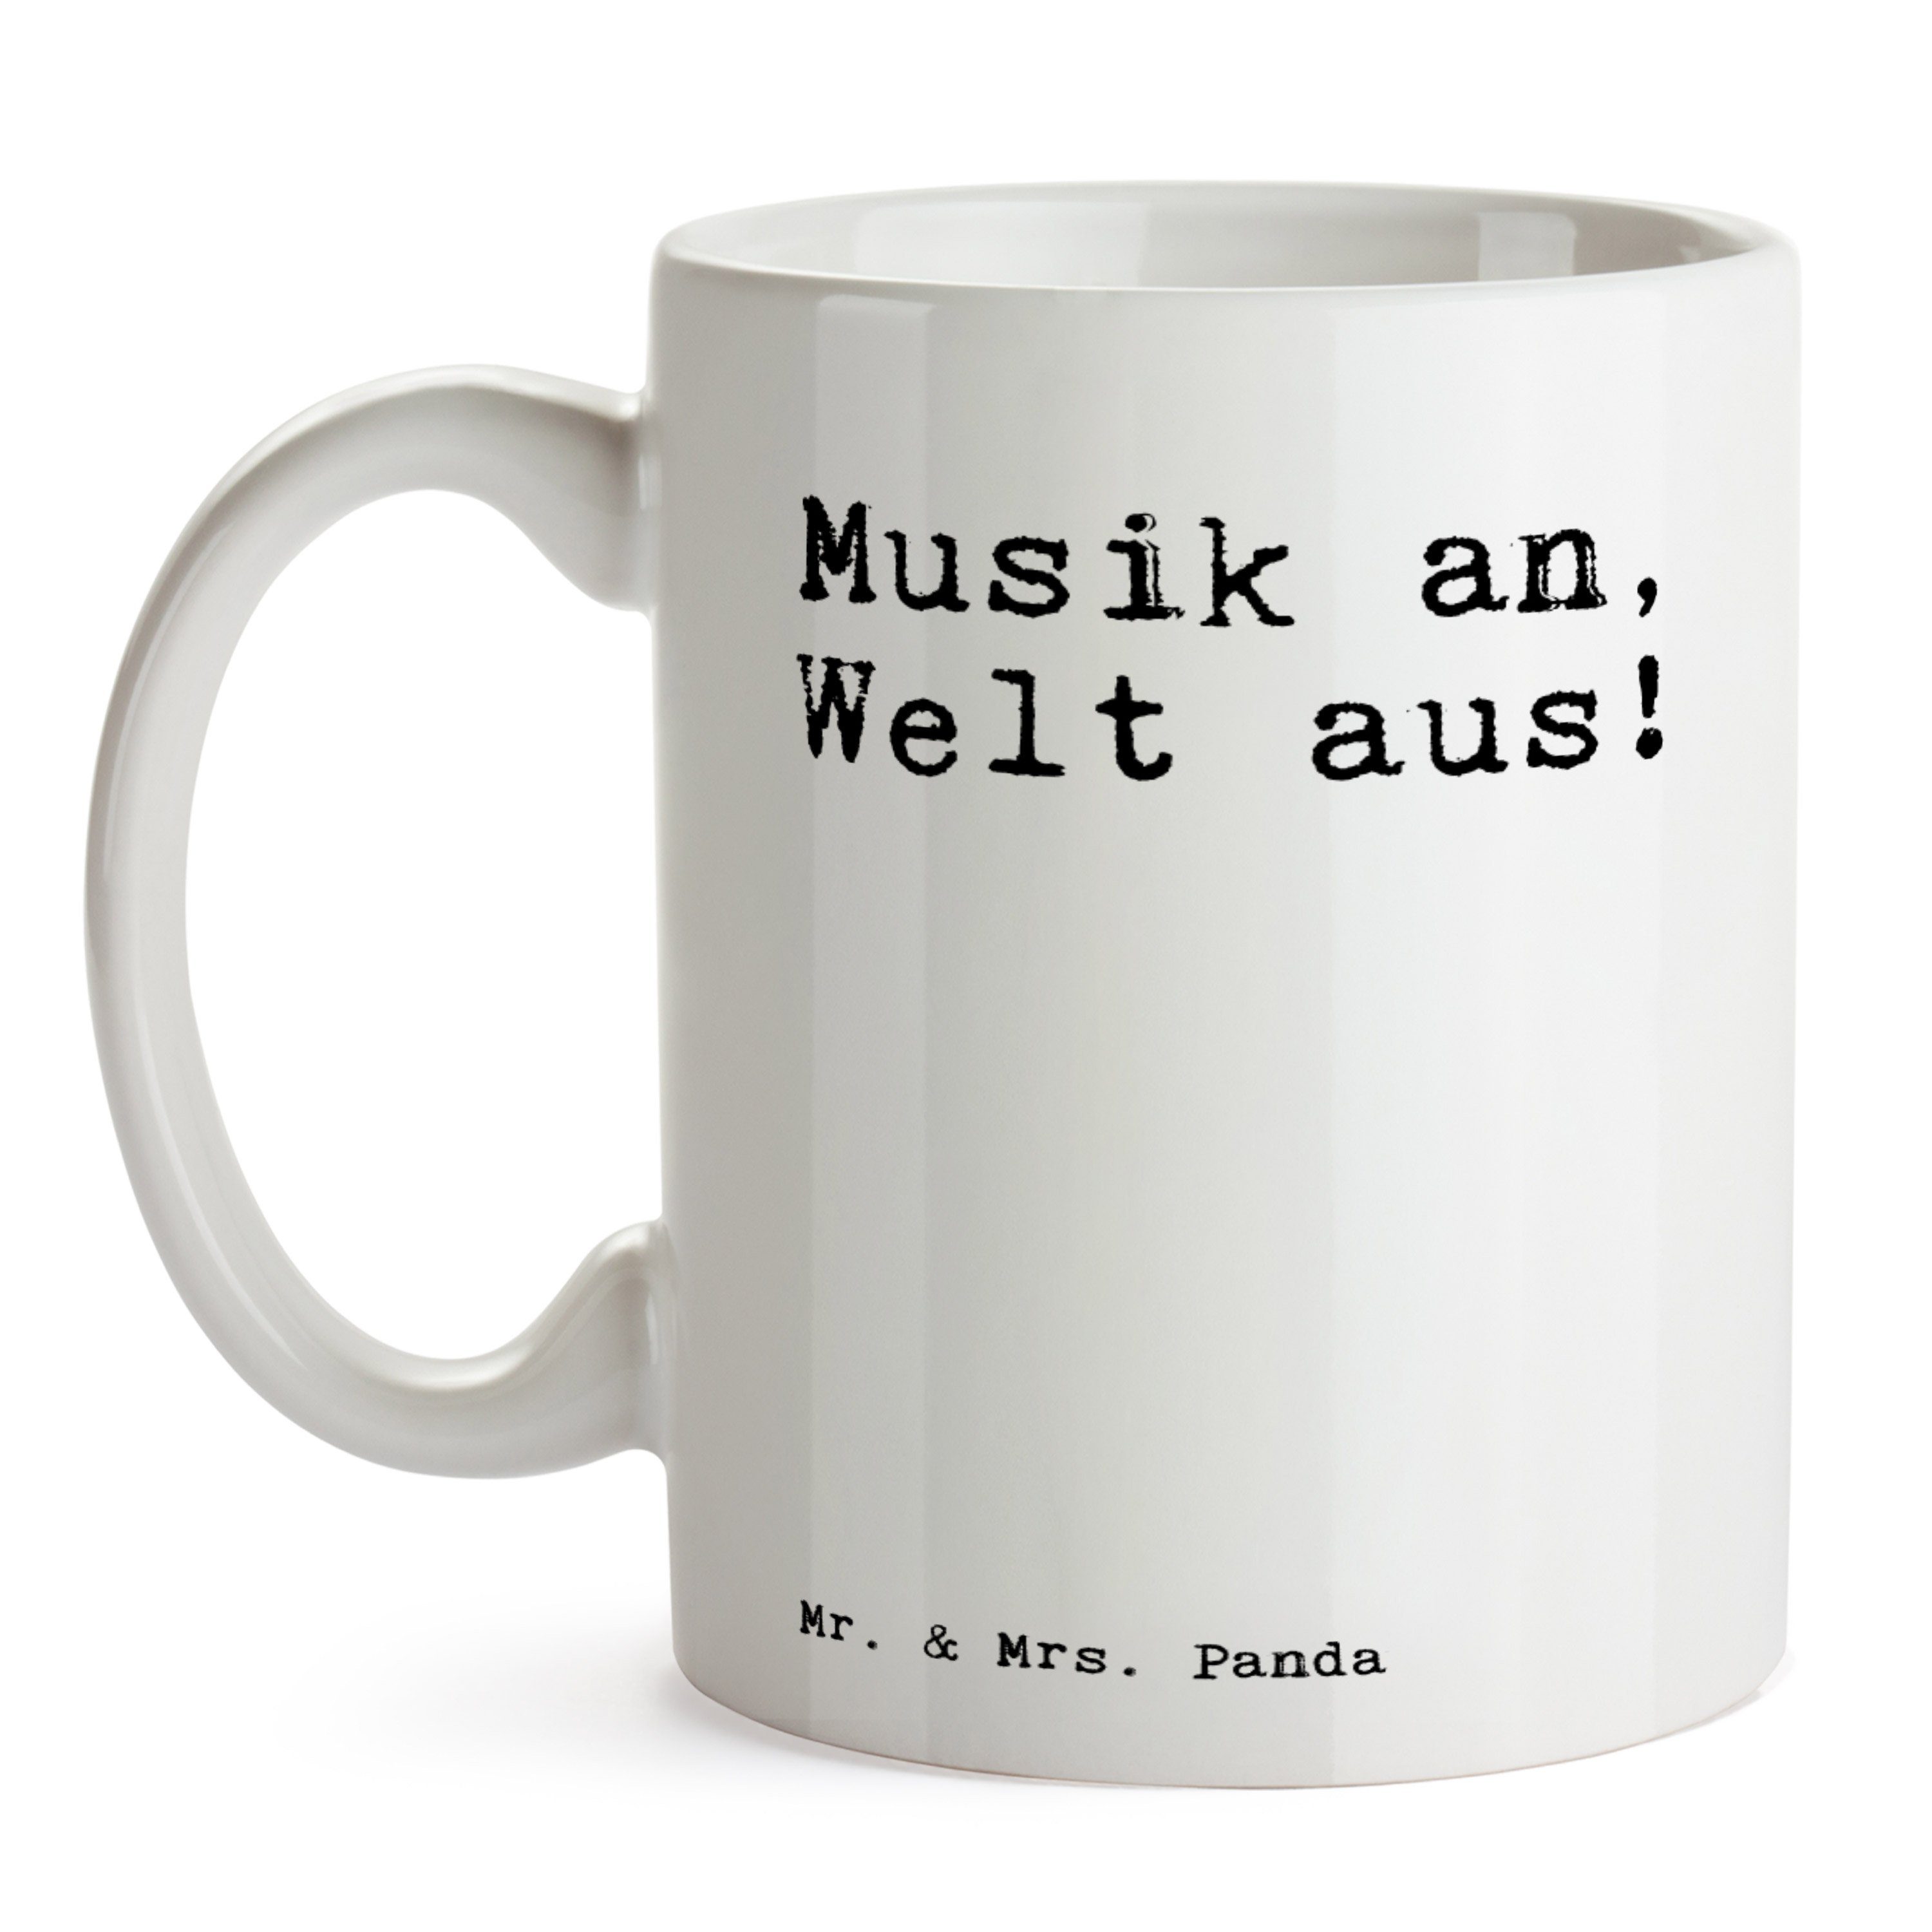 Musik an, Geschenk, - Weiß aus!... Kopfhörer, Keramik - Mr. Tasse Welt Panda Mrs. W, Spruch Sprüche &